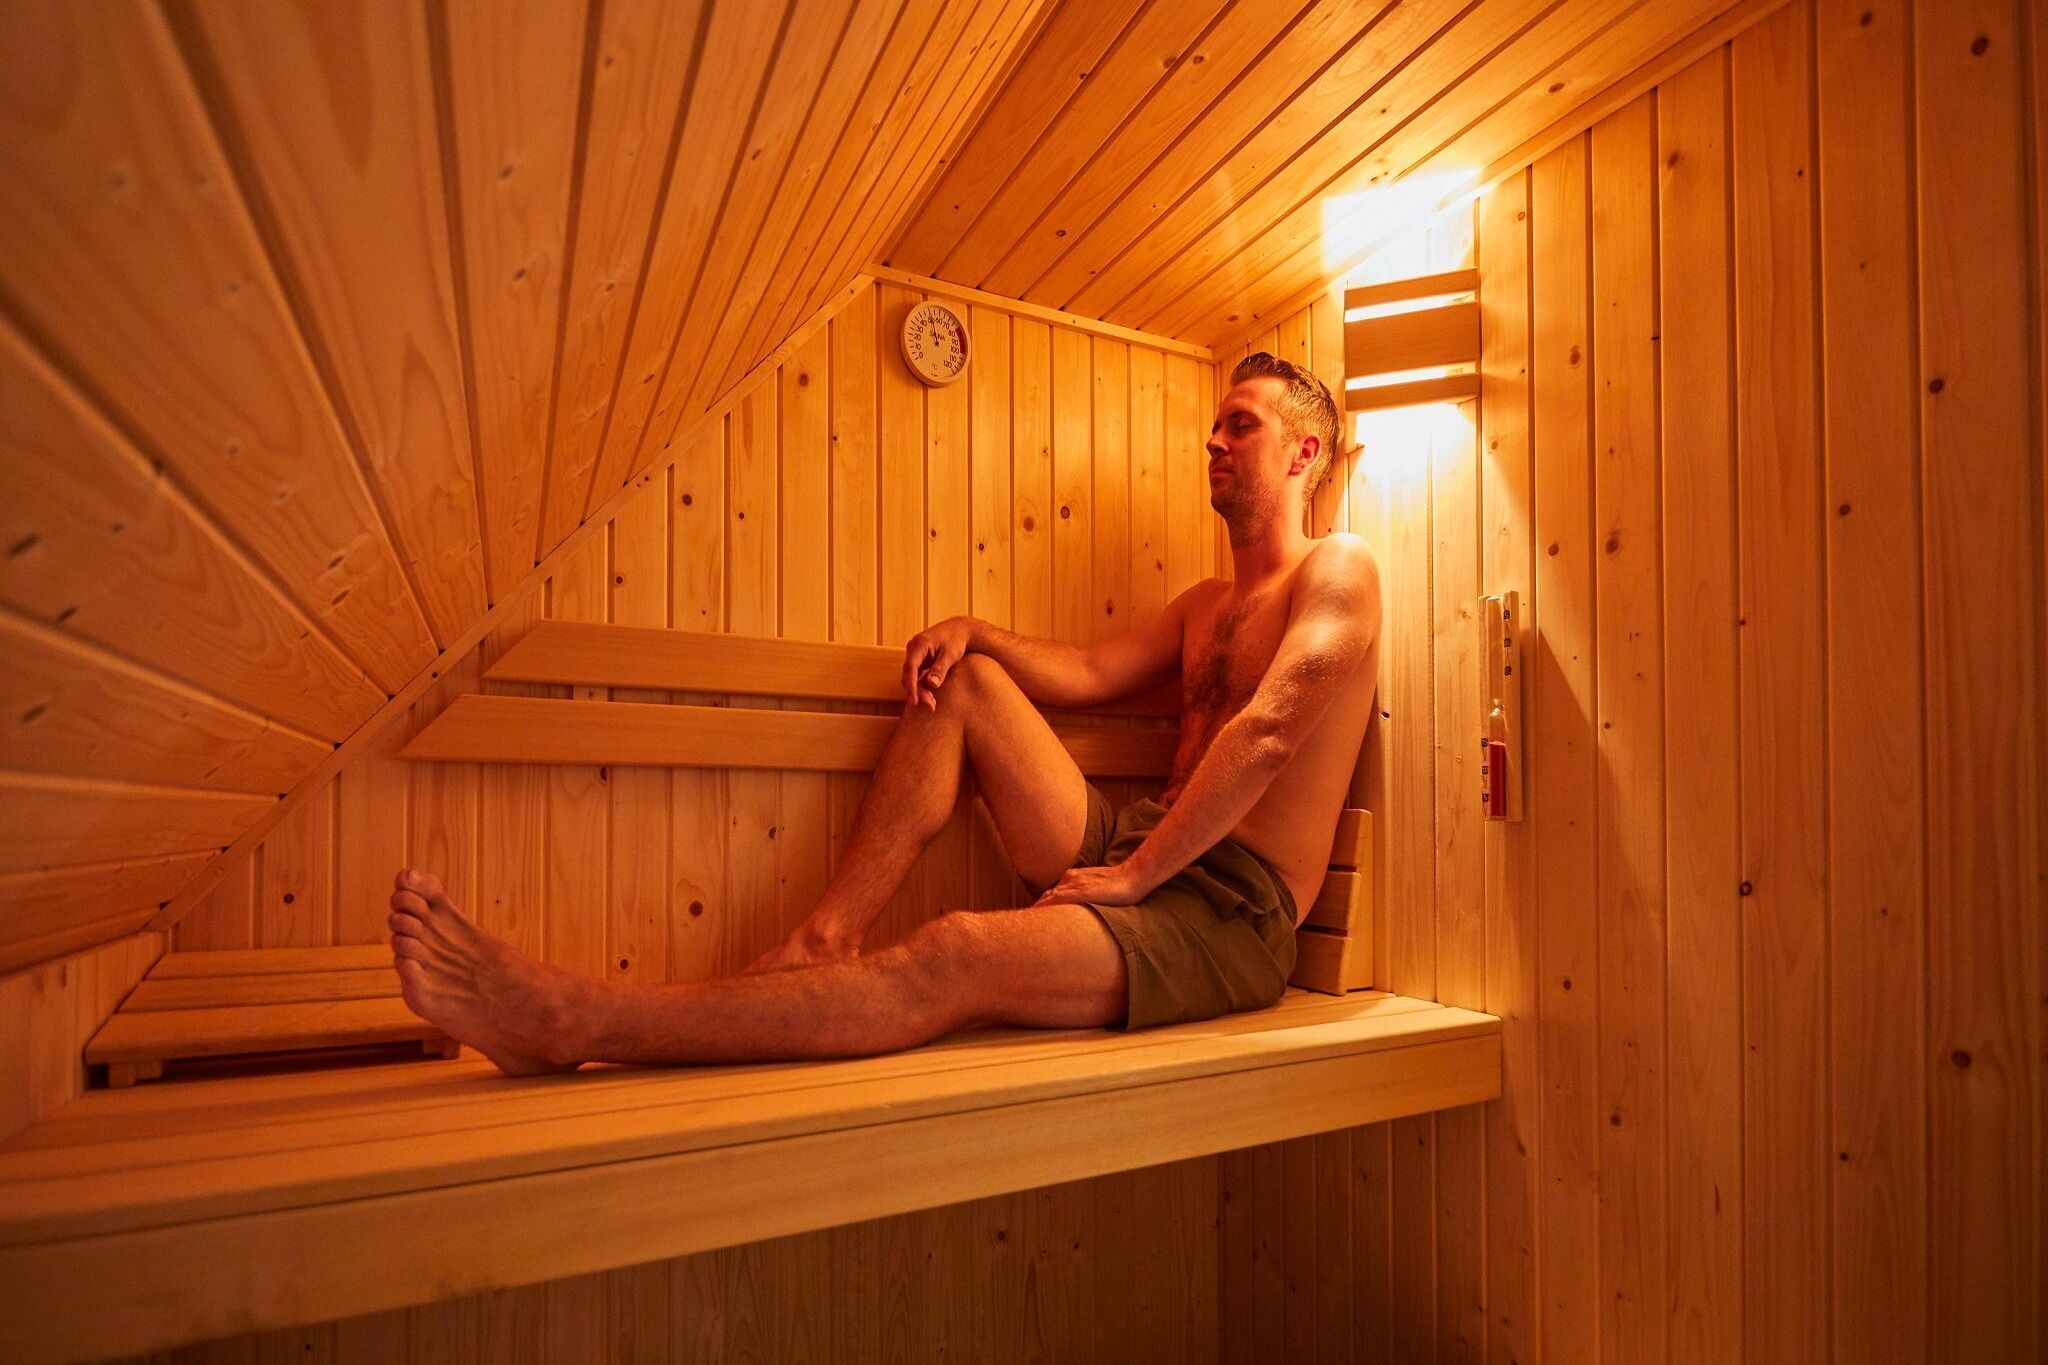 Child-friendly villa with a sauna in Limburg